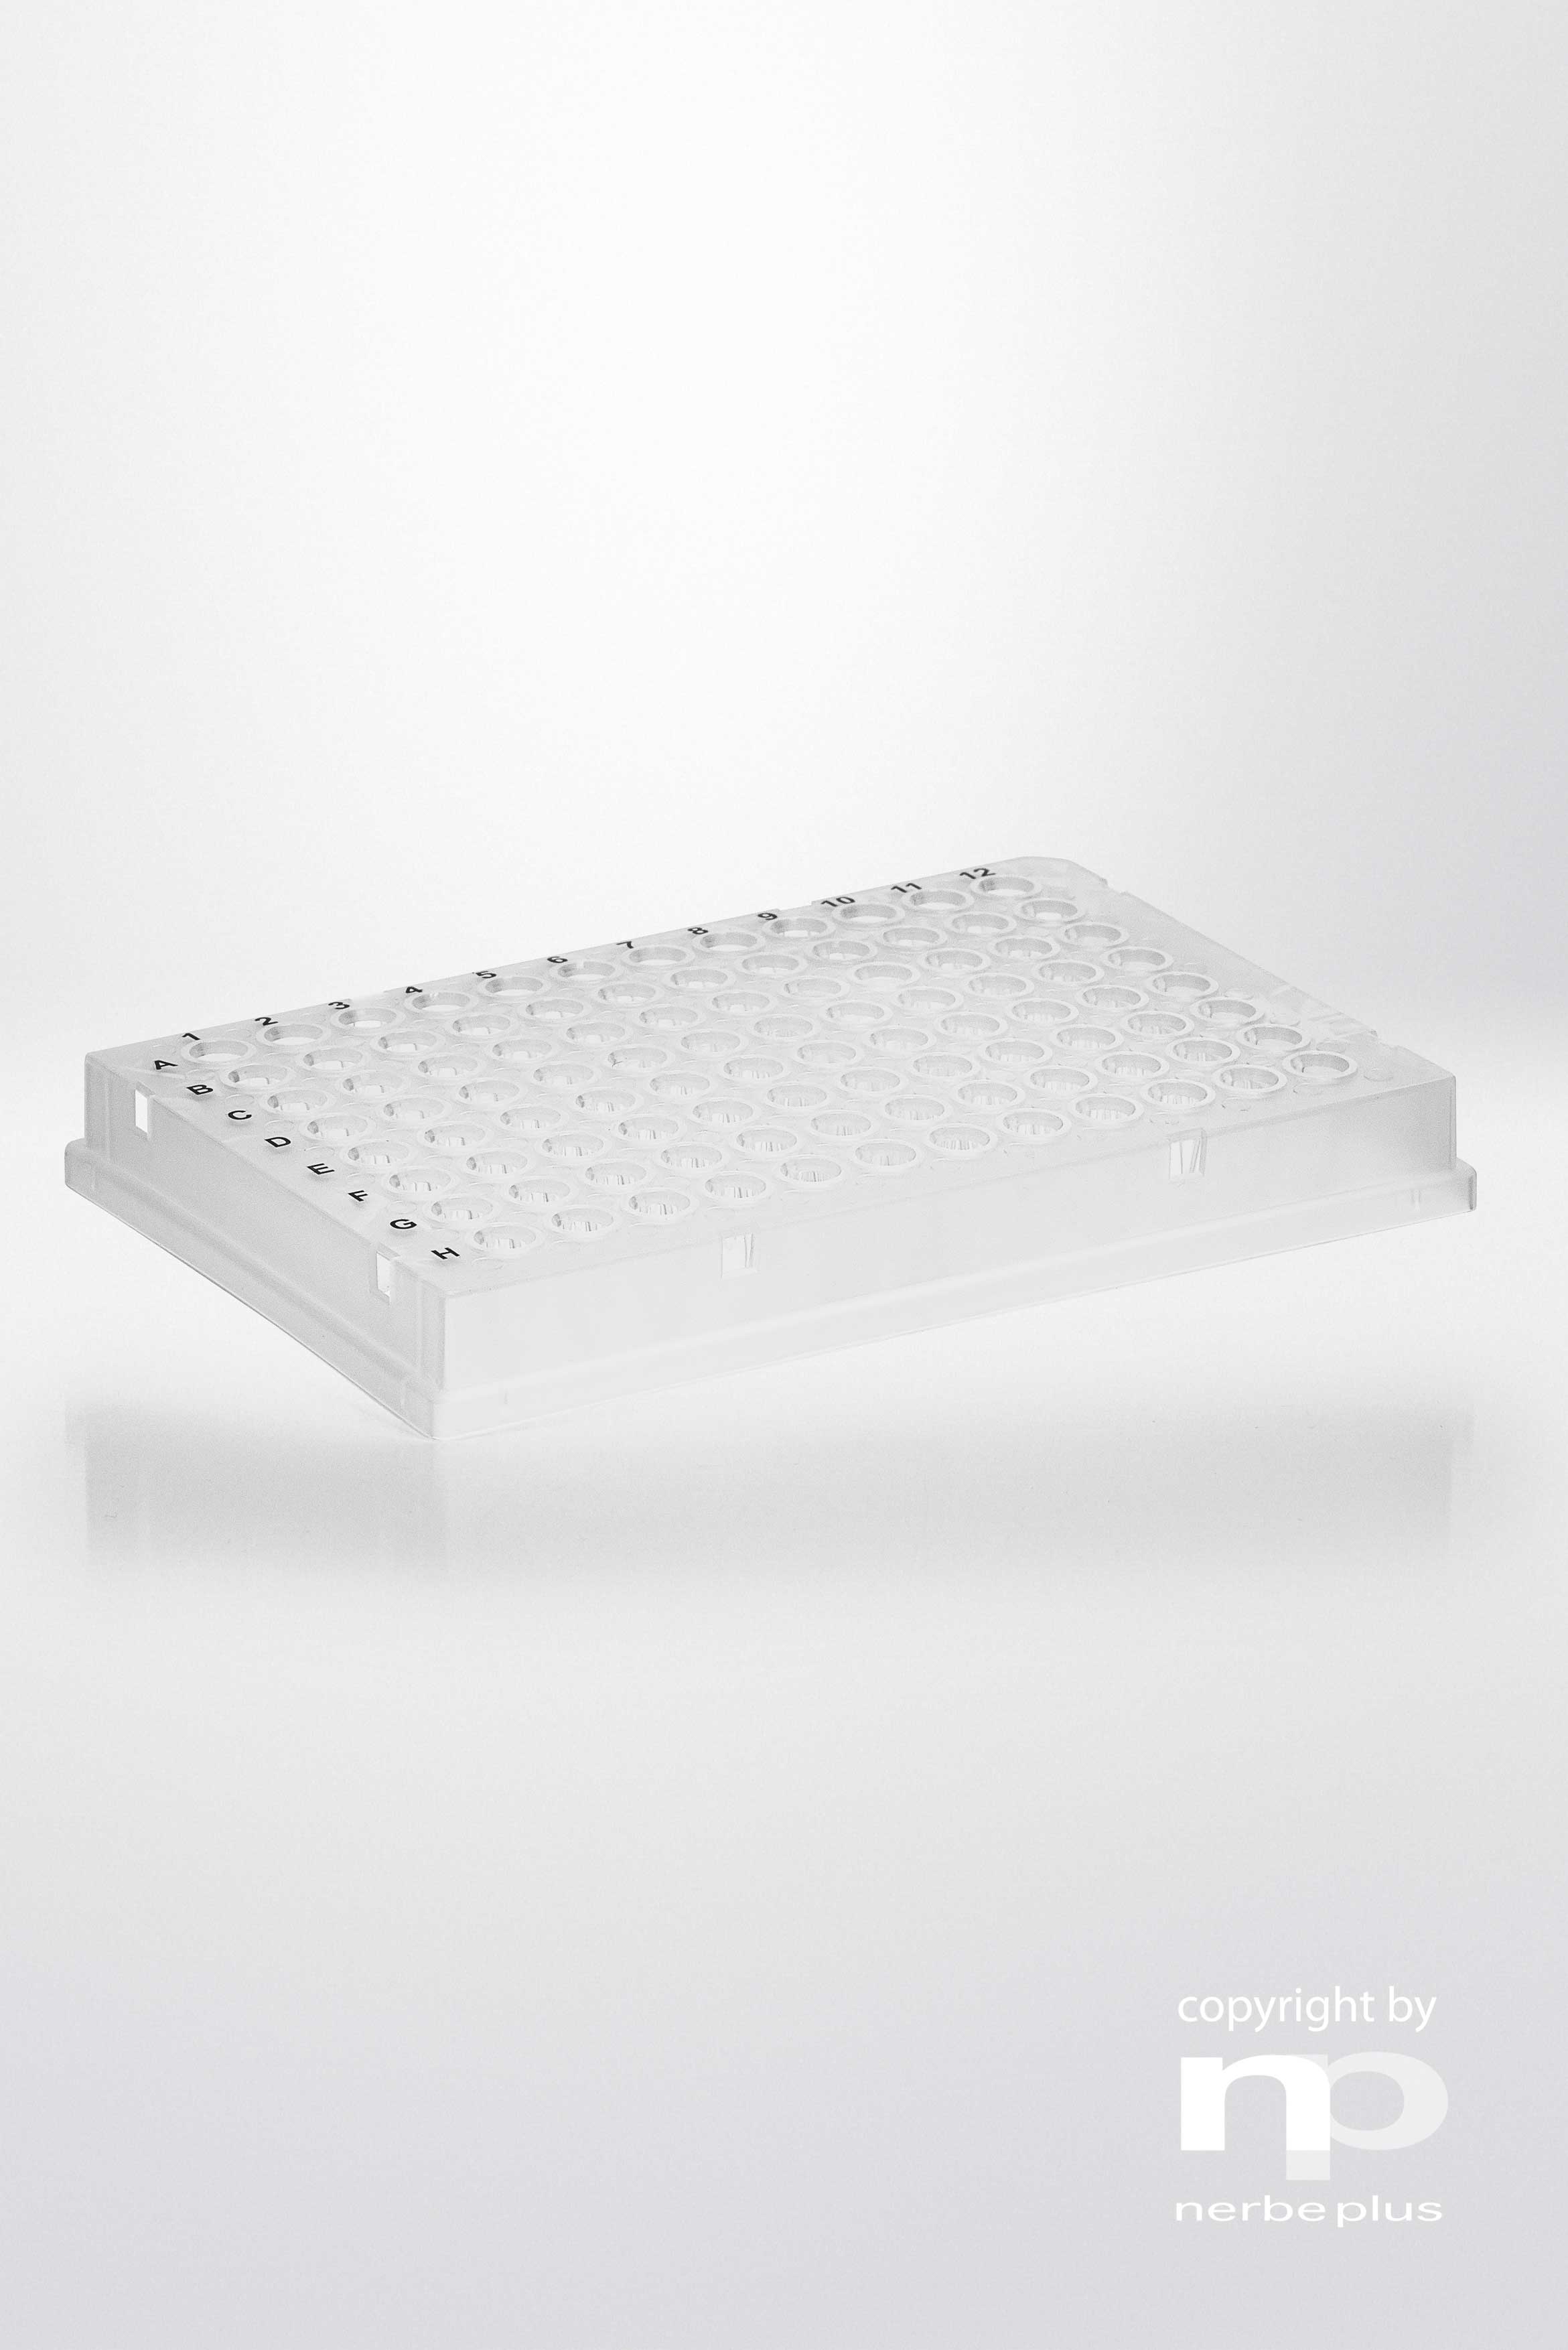 Placas para PCR. NERBE-PLUS. Capacidad: 96x0,1 ml. Tipo: Semi faldón, bordes altos. Resist. centrif (g): 6000. Color: Transparente. Esterilidad: PCR Ready. Low profile: Sí. qPCR: Sí